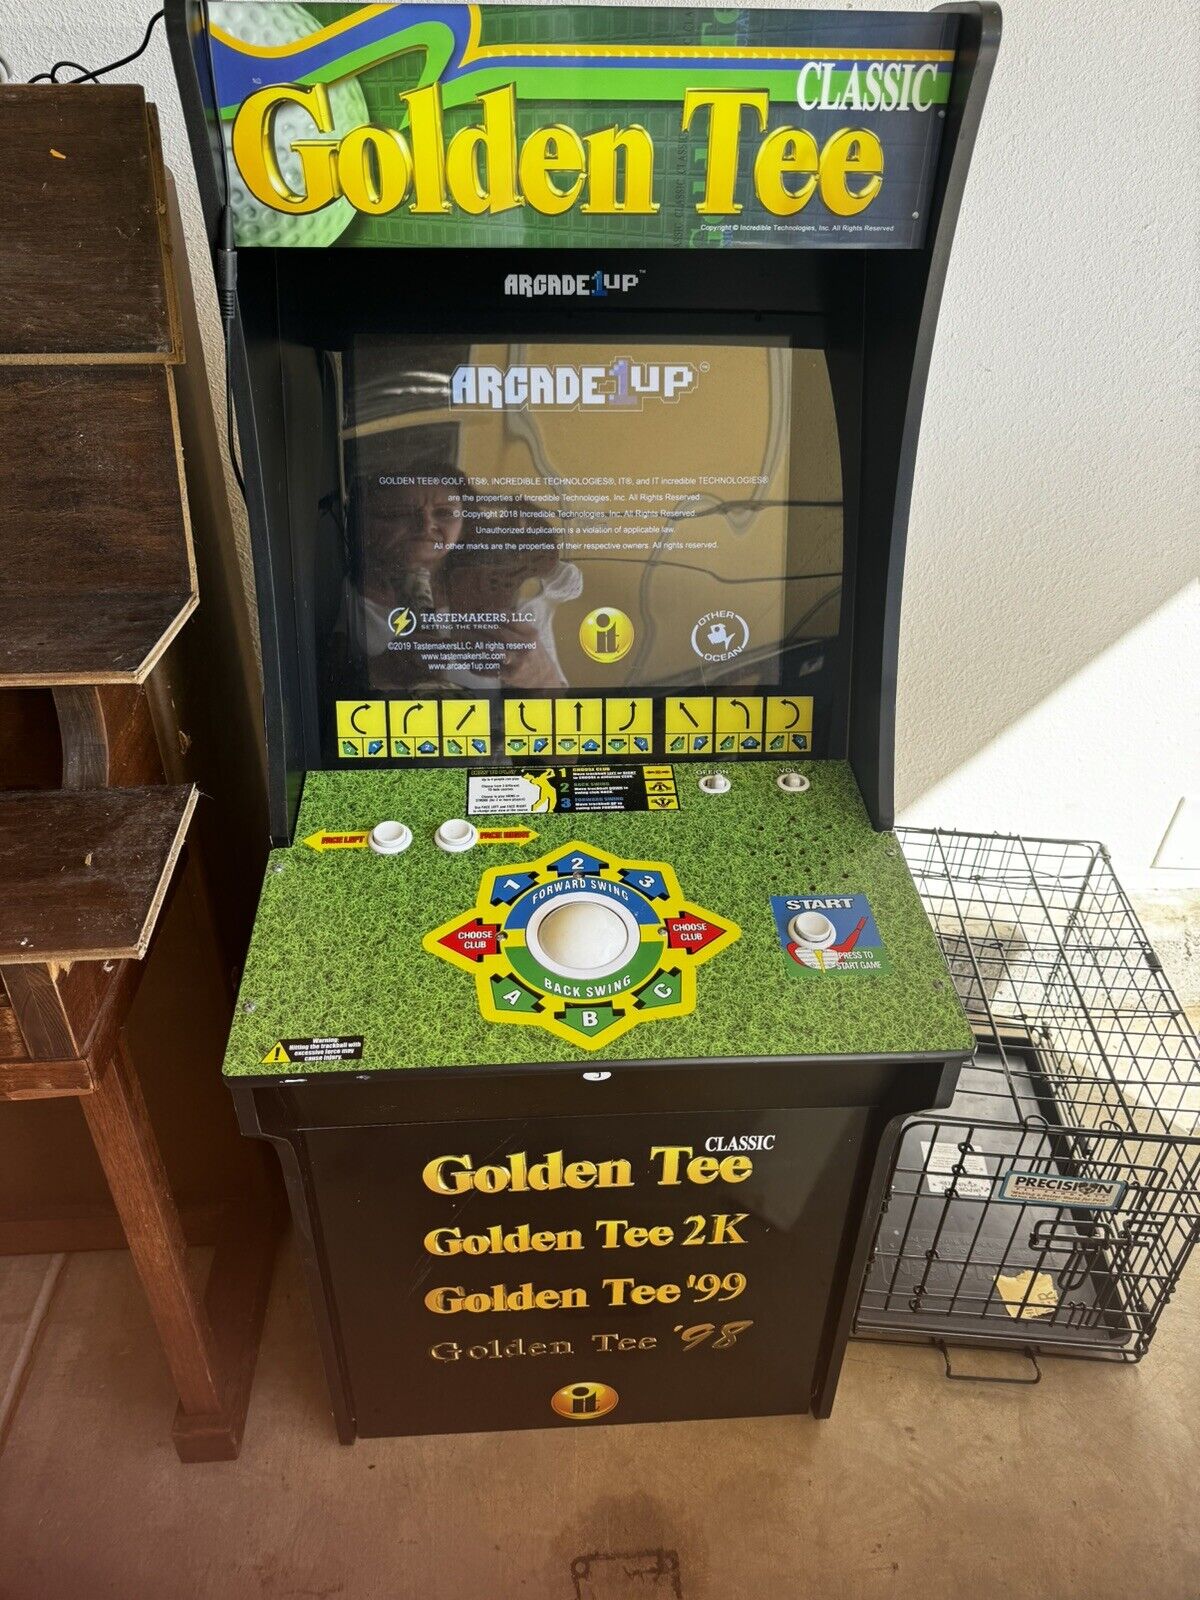 Arcade1UP - Golden Tee 3D Golf (19